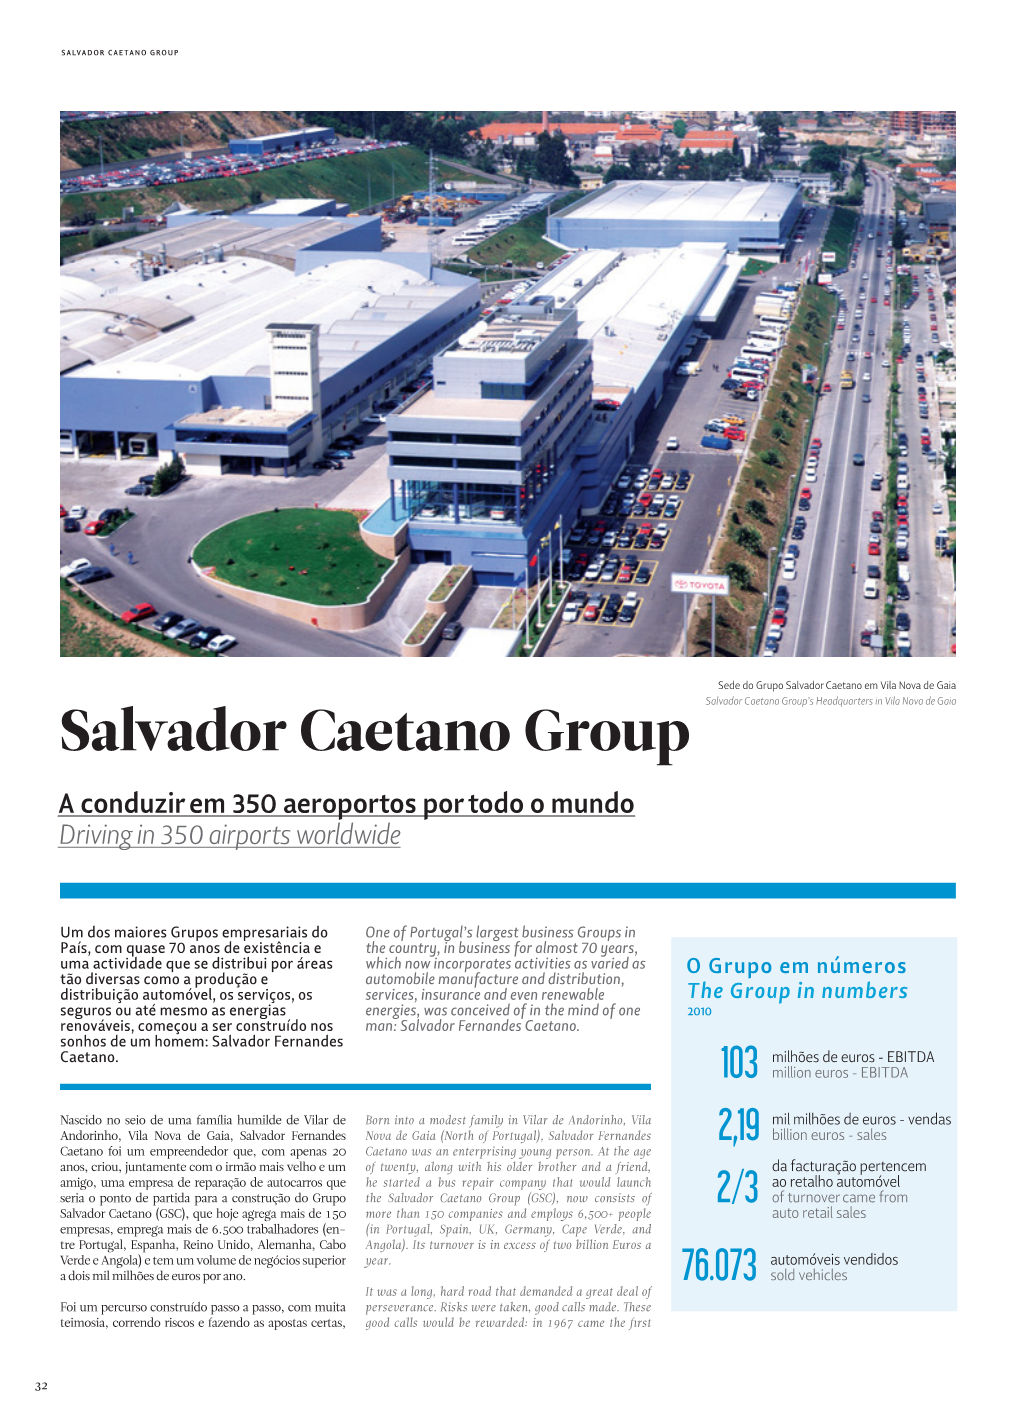 Salvador Caetano Group